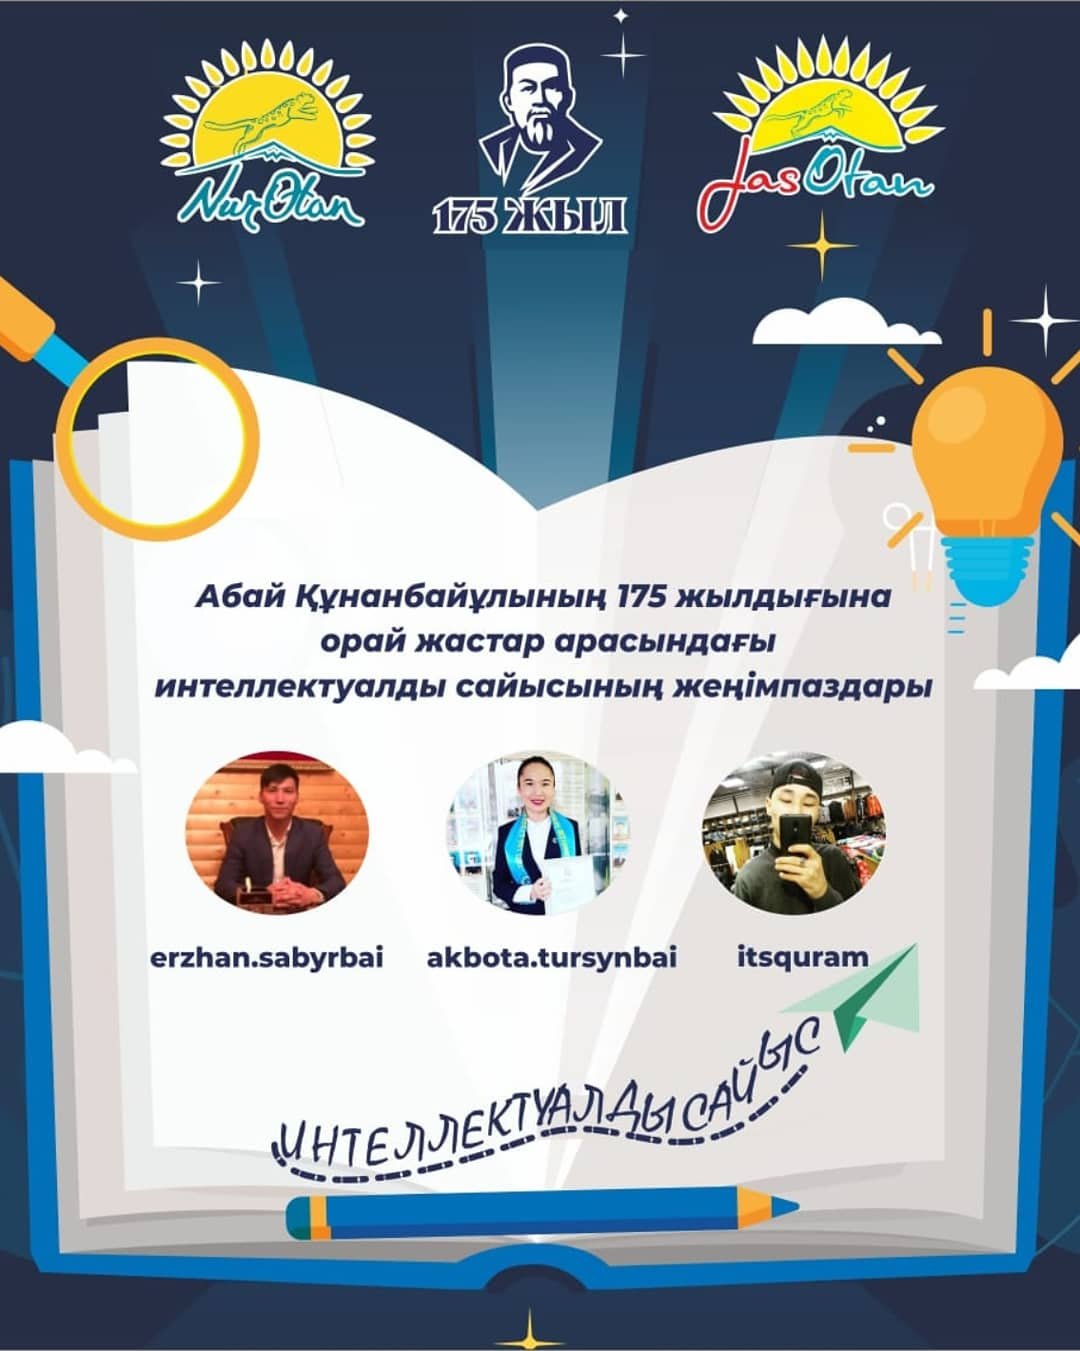 МК «Jas Otan» организовало онлайн интеллектуальный конкурс